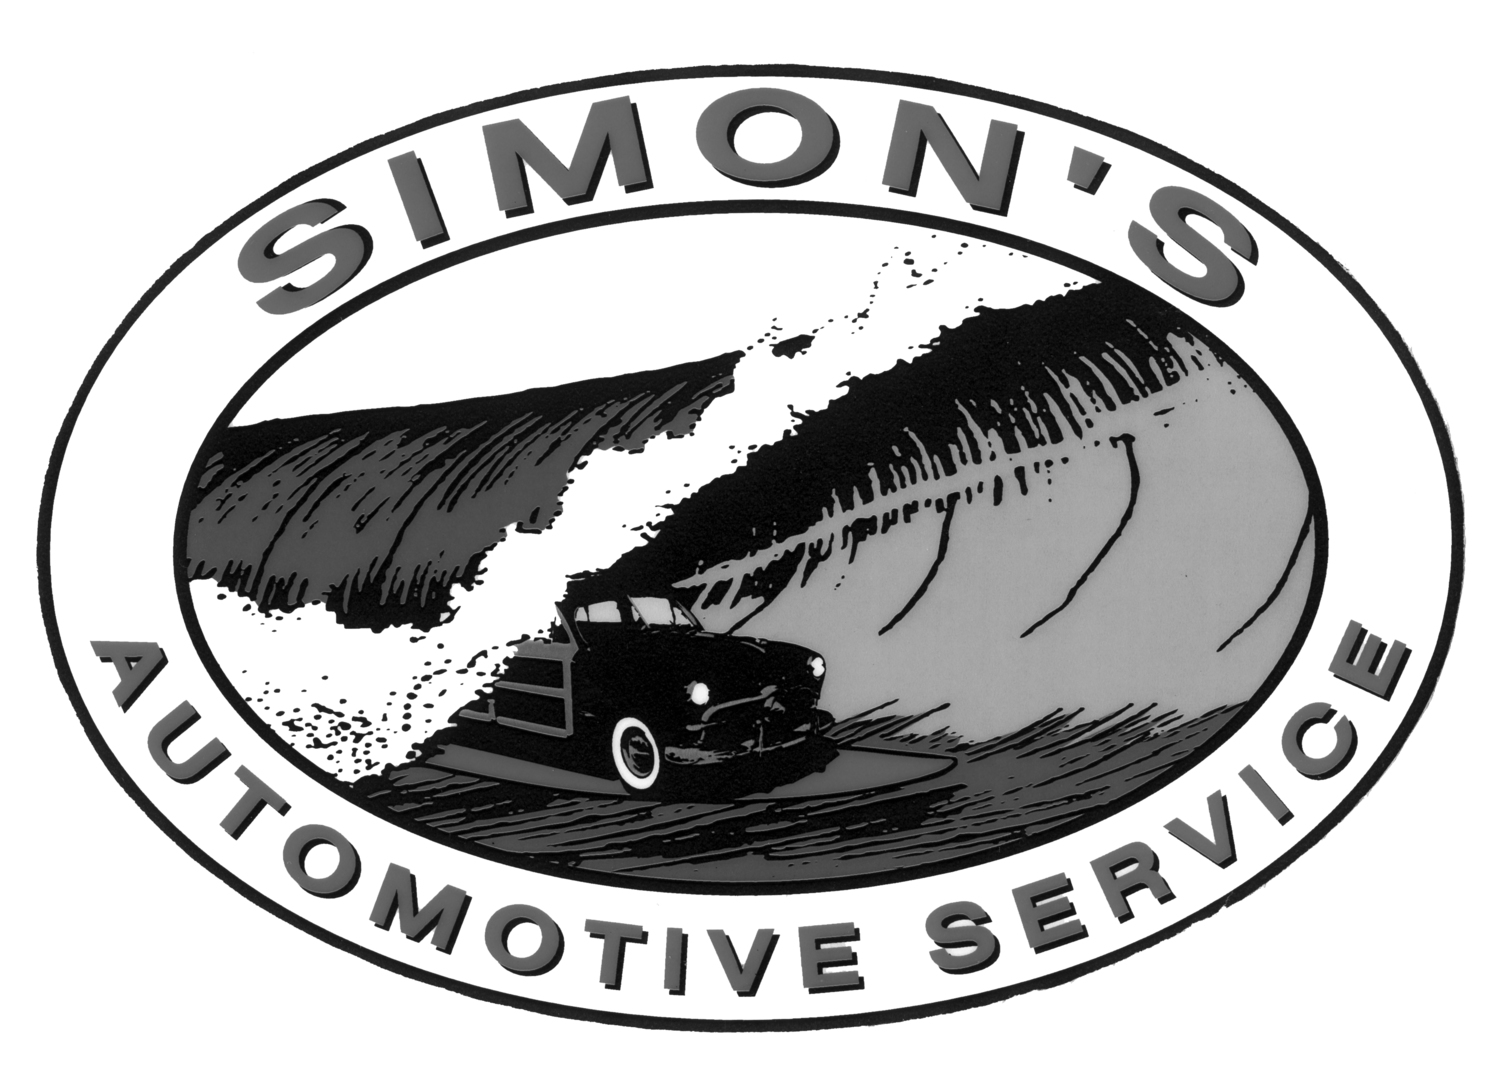 Simon's Automotive Service